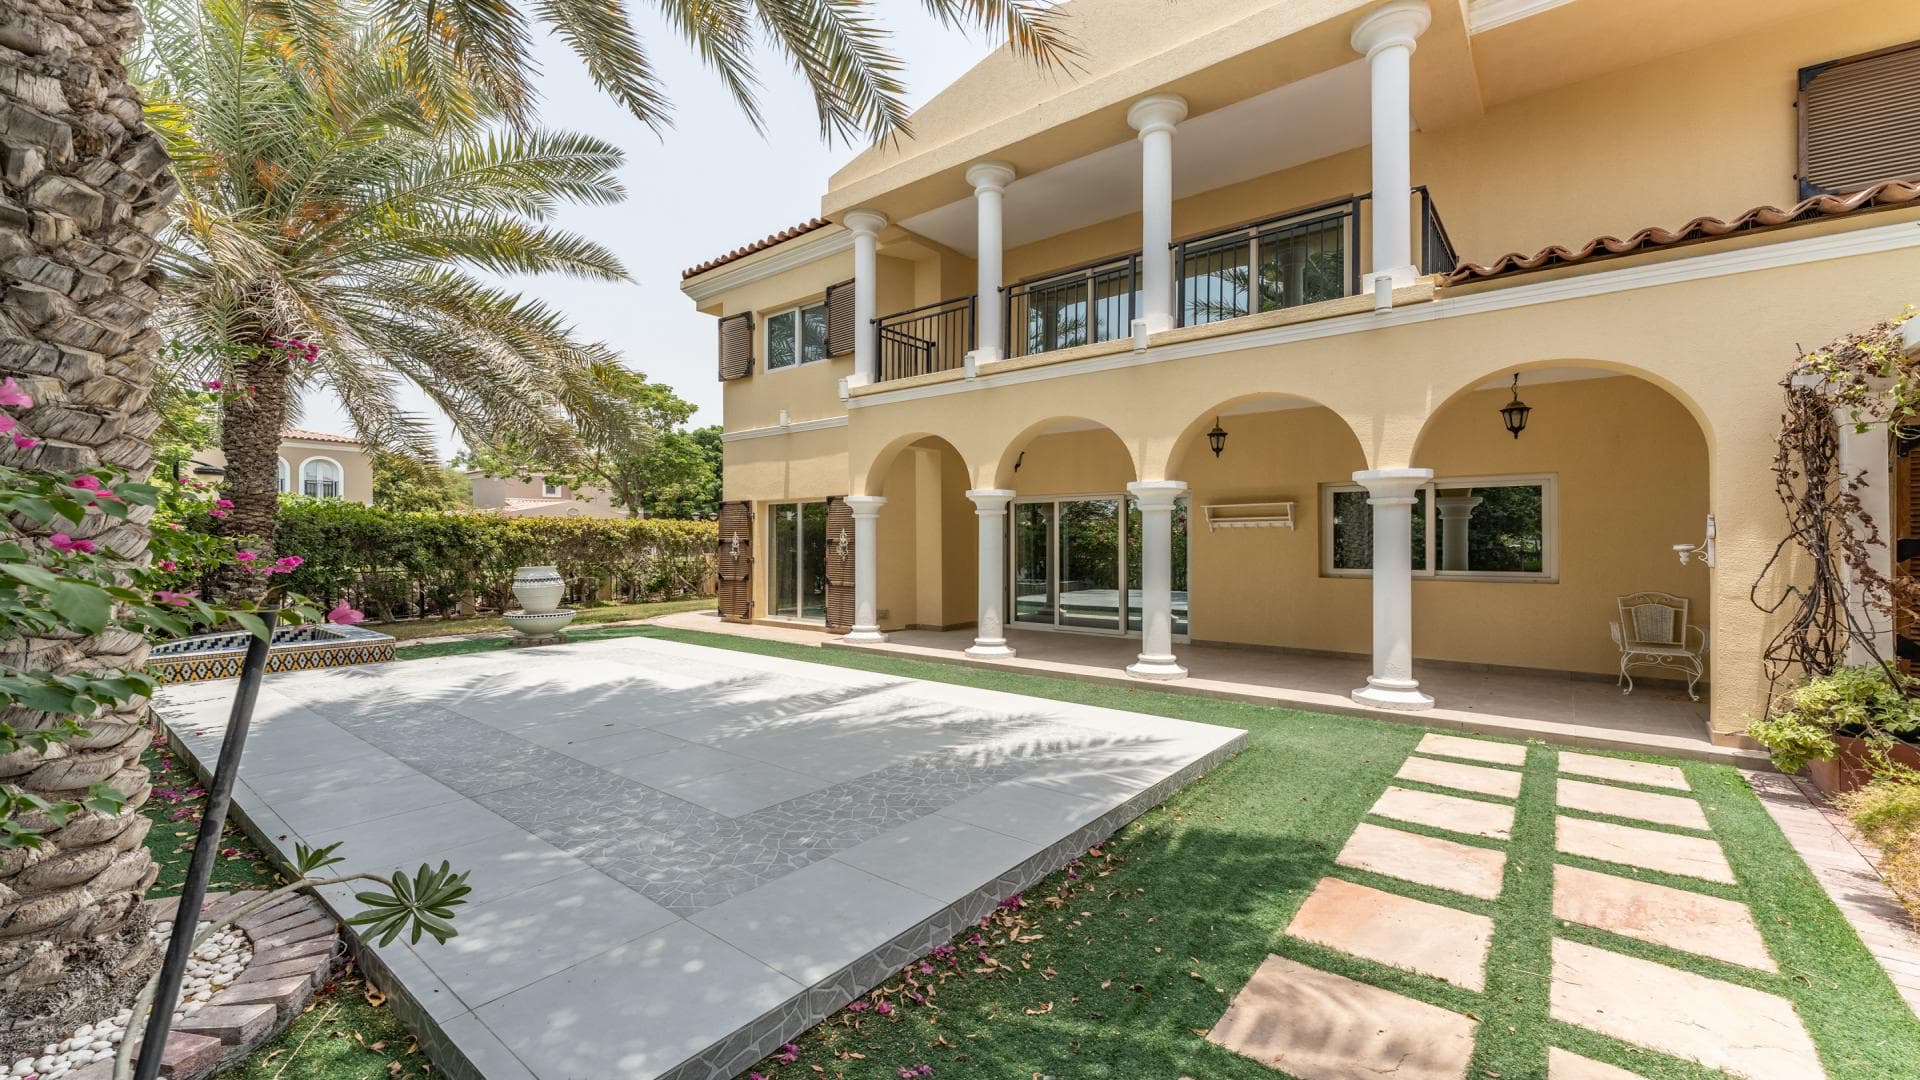 5 Bedroom Villa For Rent Al Thamam 36 Lp36037 3097a60e2f00a600.jpg